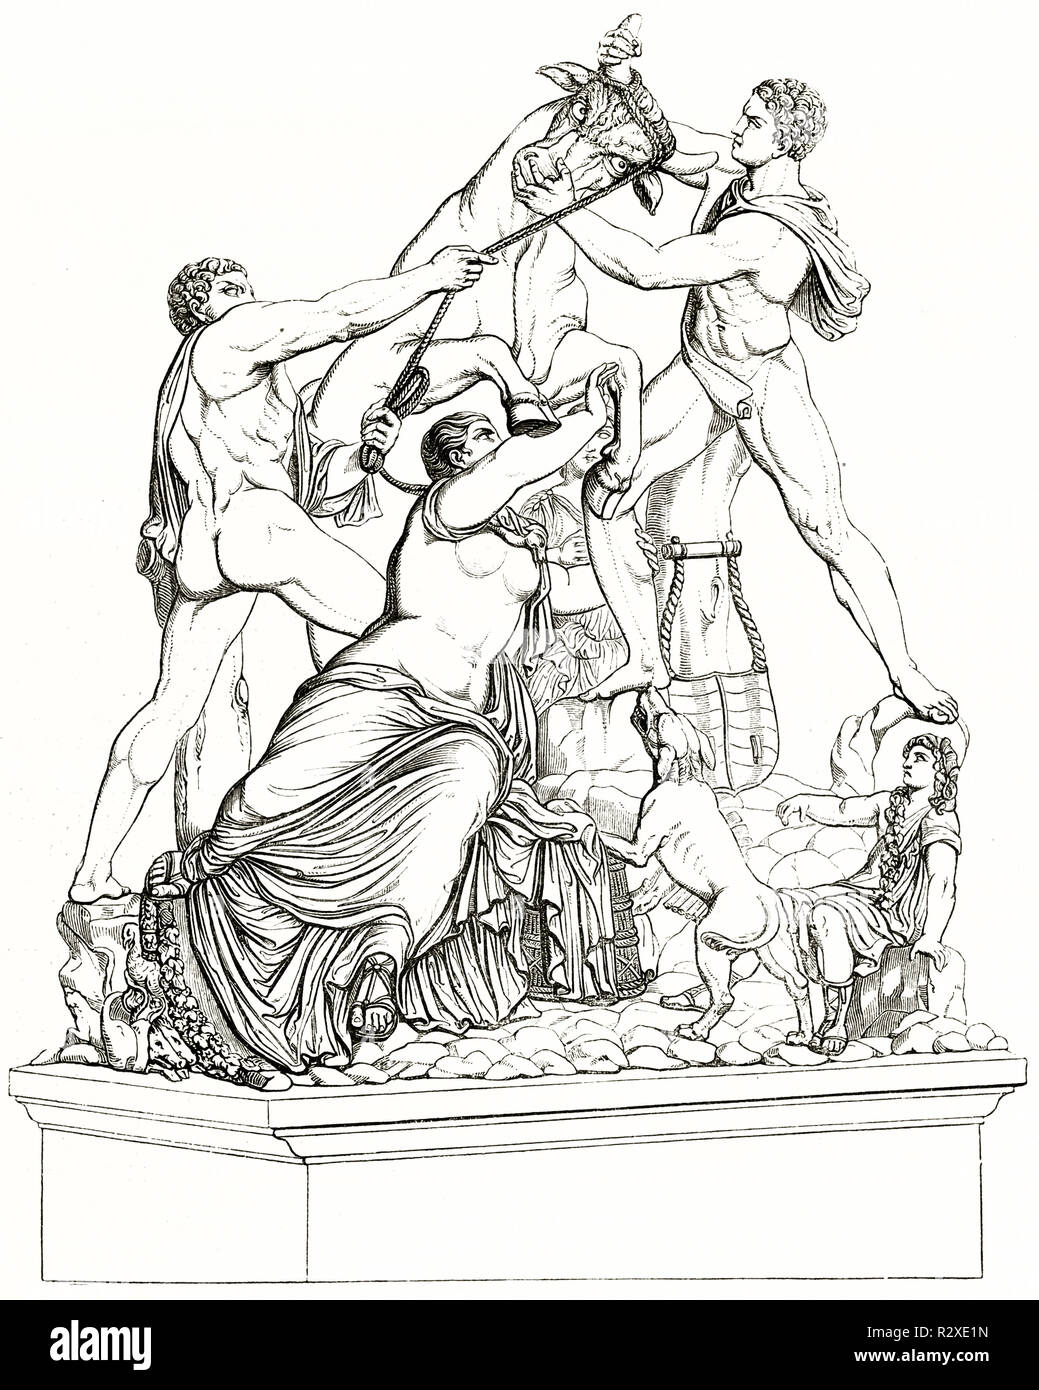 Ancienne reproduction de la Toro Farnese Farnese (Bull) conservés dans le Musée Archéologique National, Naples, Italie. Publ. sur Magasin Pittoresque, Paris, 1846 Banque D'Images